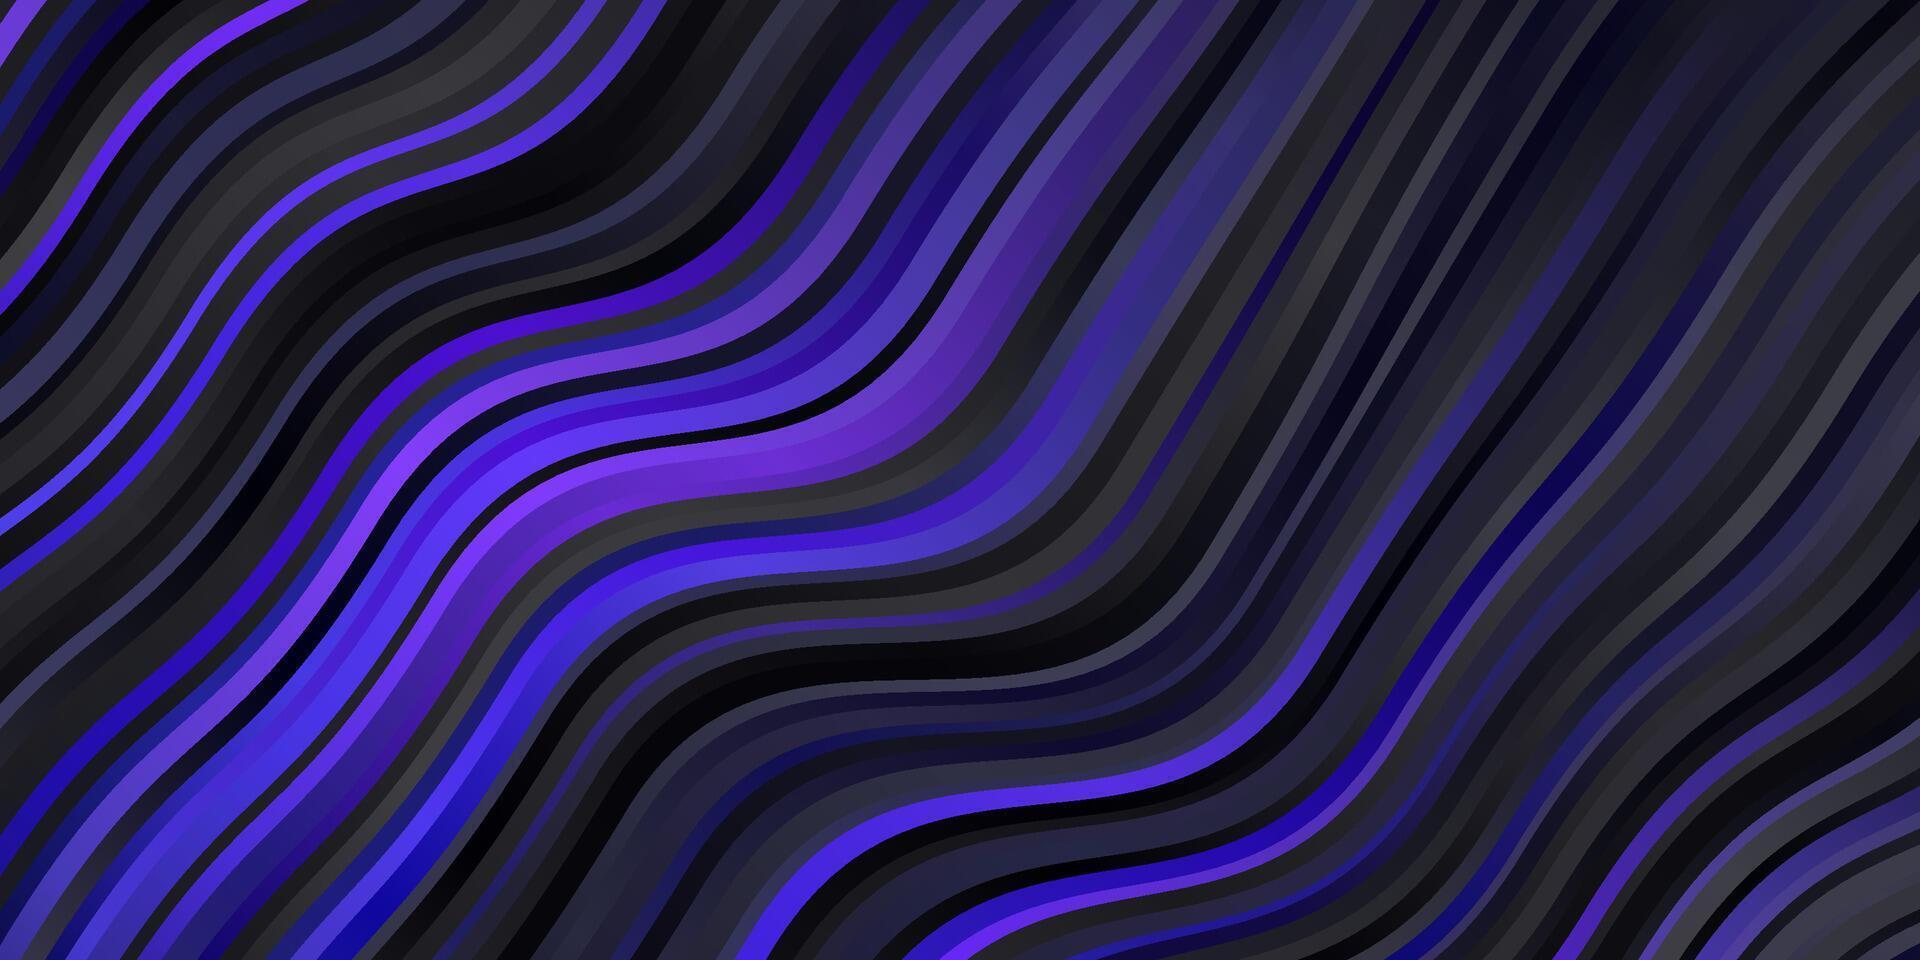 mörkrosa, blå vektormönster med böjda linjer. vektor